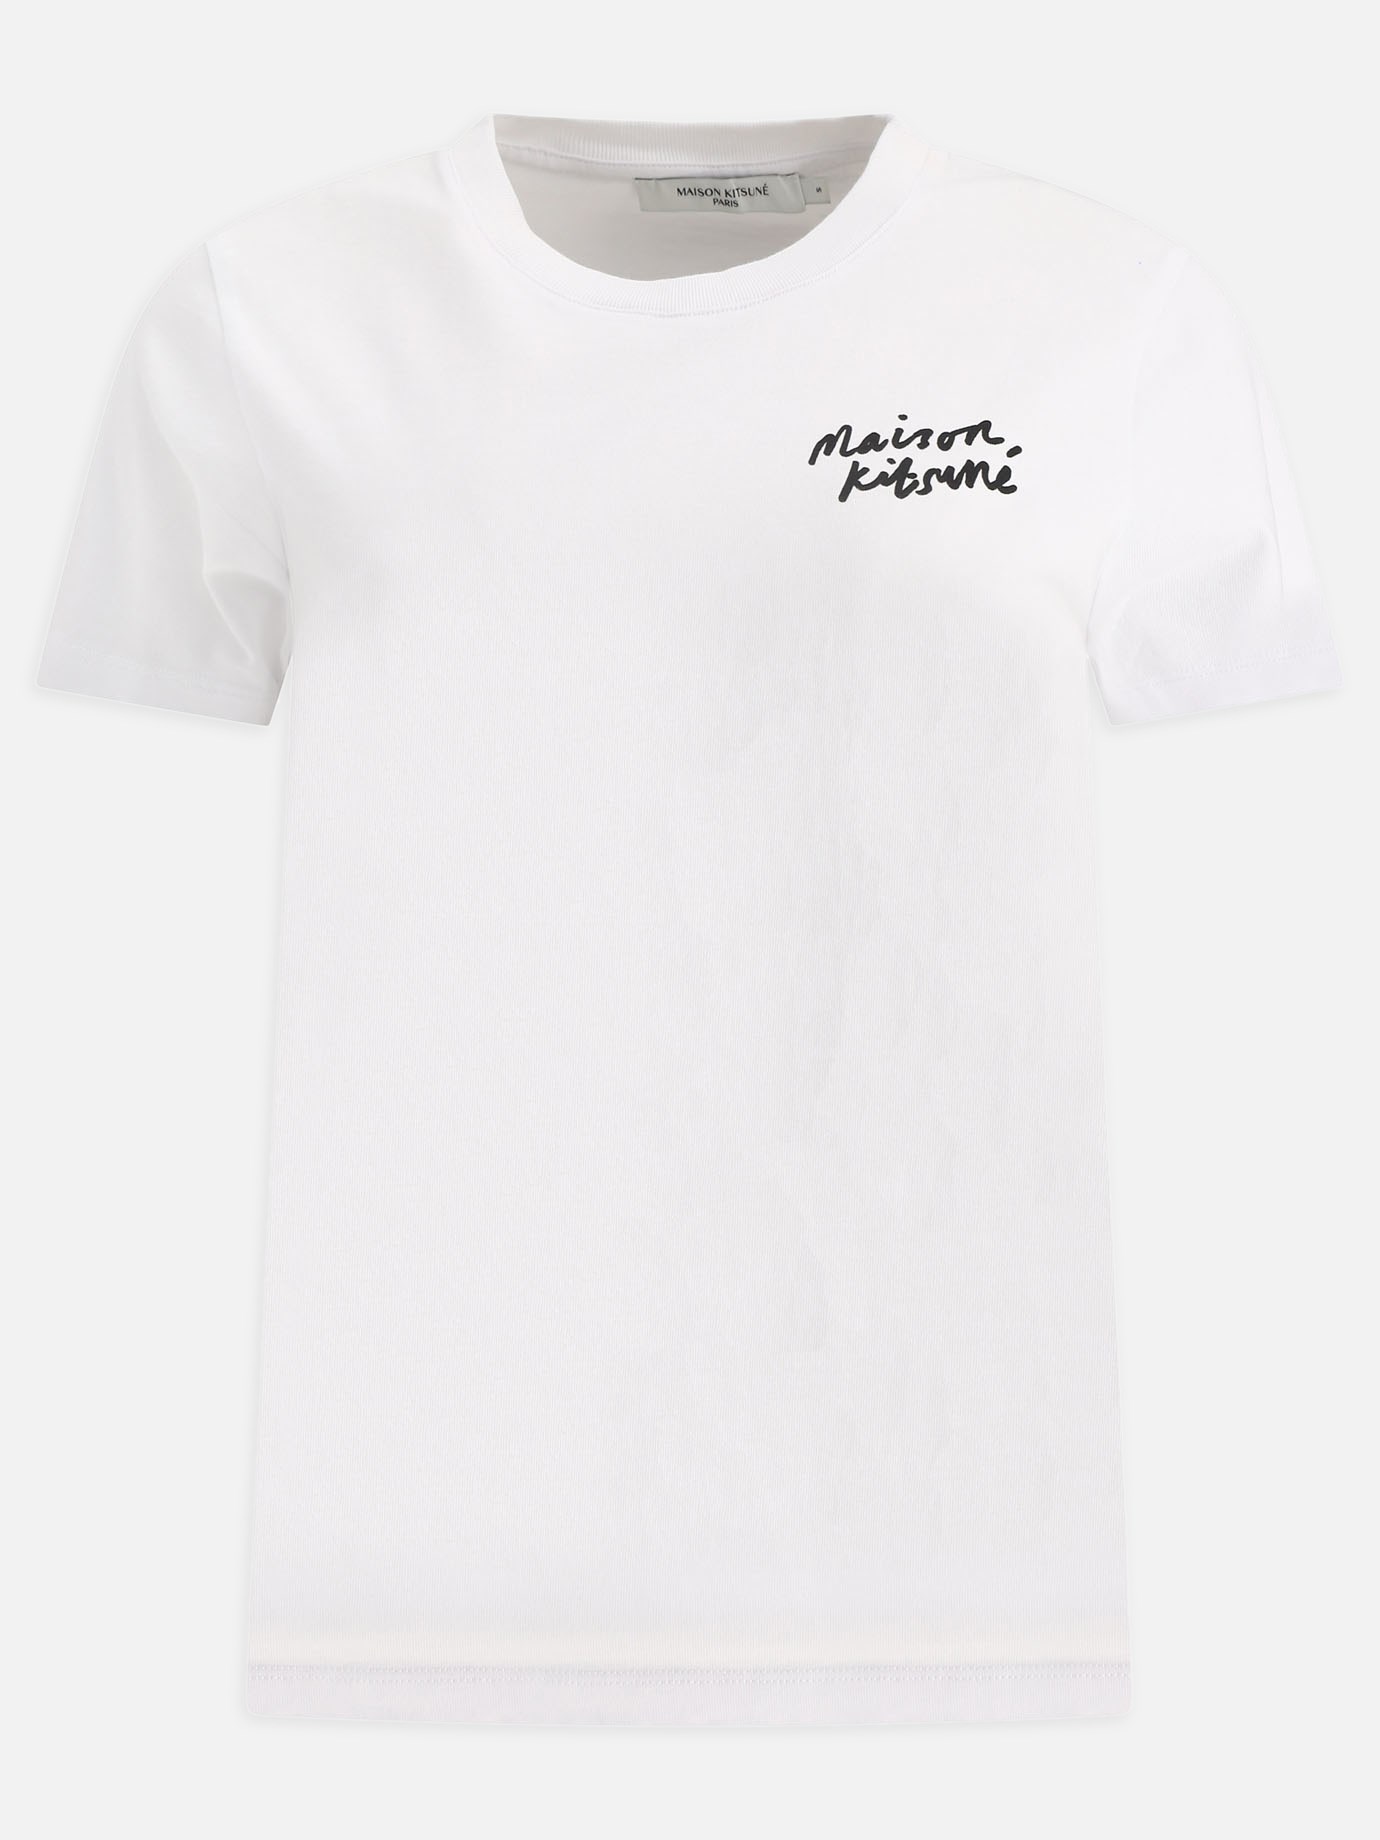  Mini Handwriting  t-shirtby Maison Kitsuné - 4